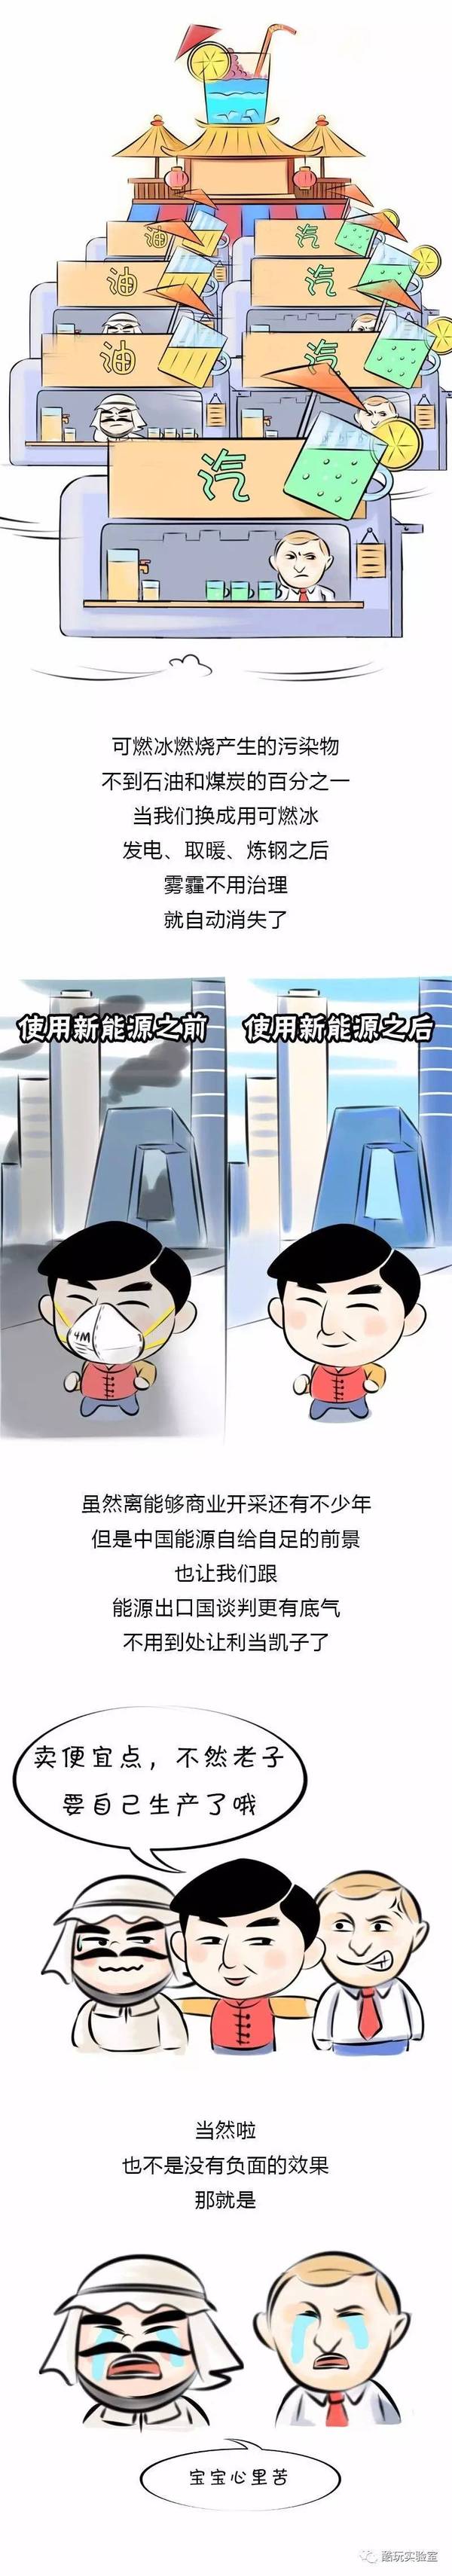 【j2开奖】【明白漫画】中国可燃冰开采领先世界，网易网友一脸懵逼，新能源无可比拟，历害了我的国！